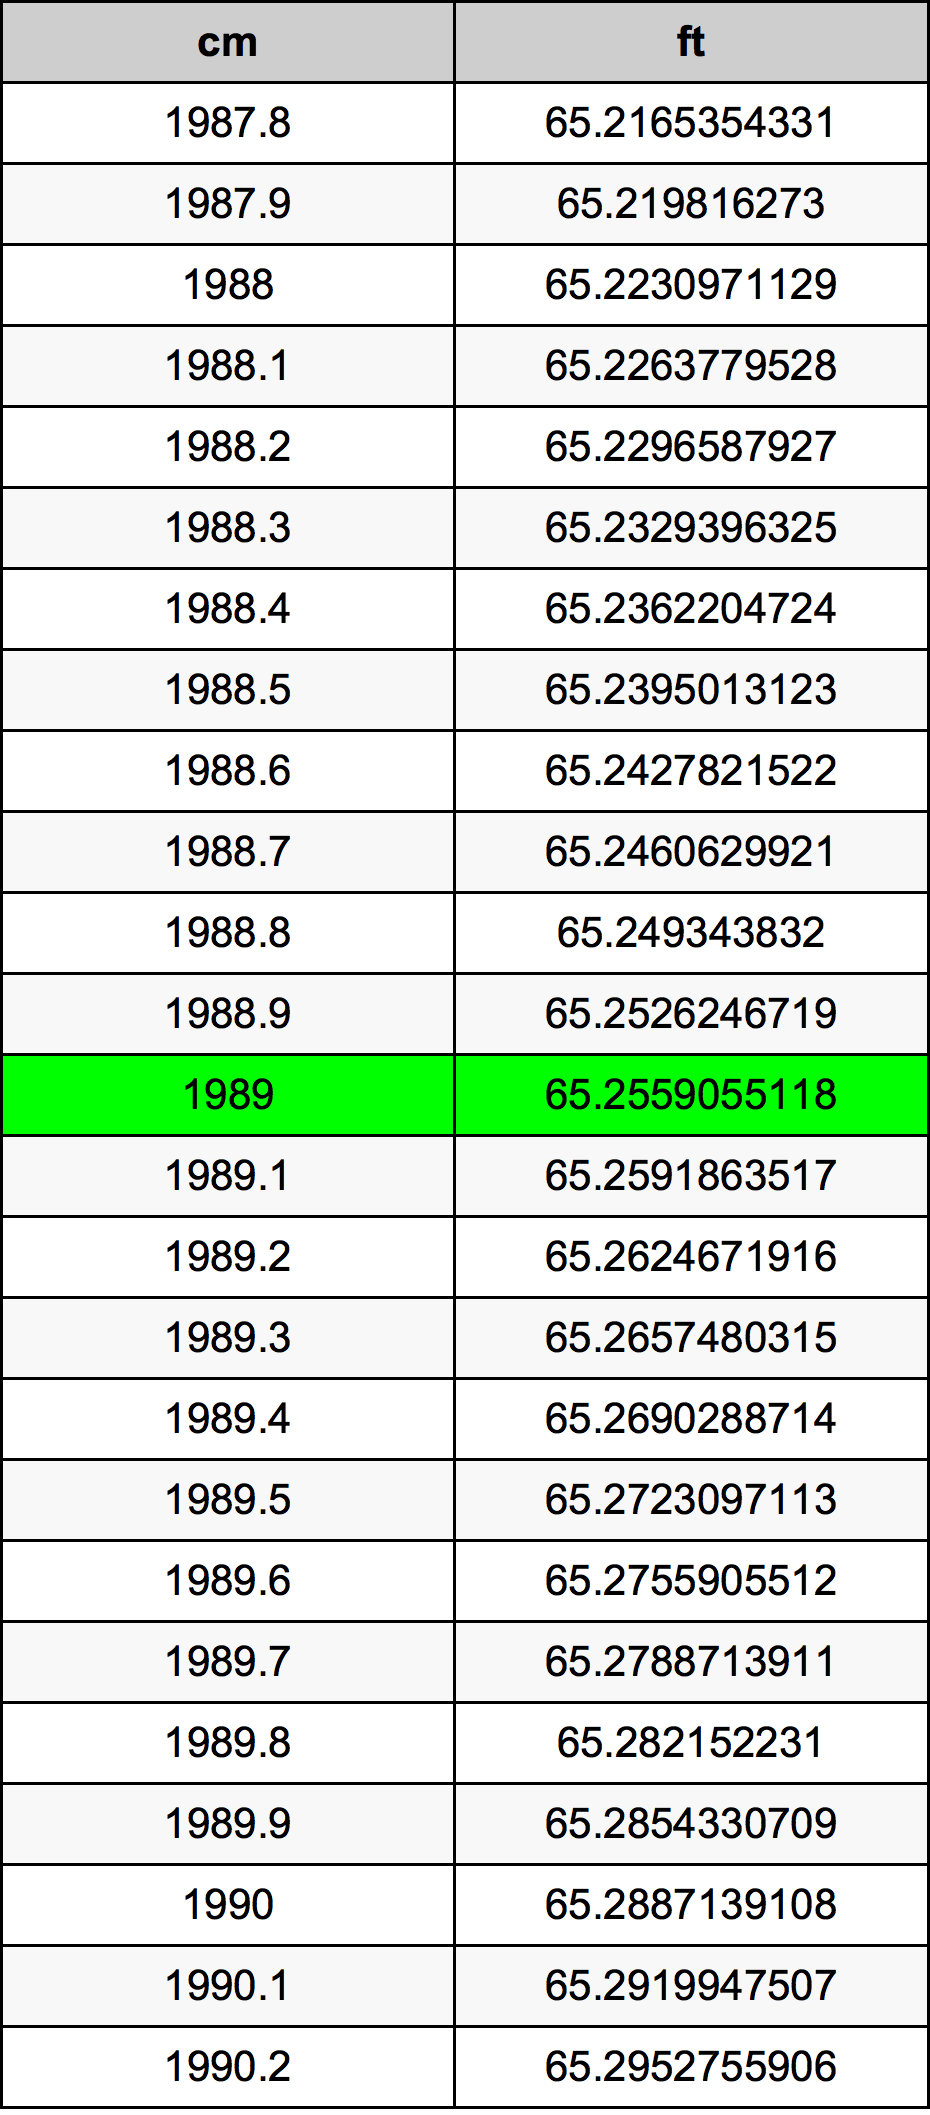 1989 Centimetre Table